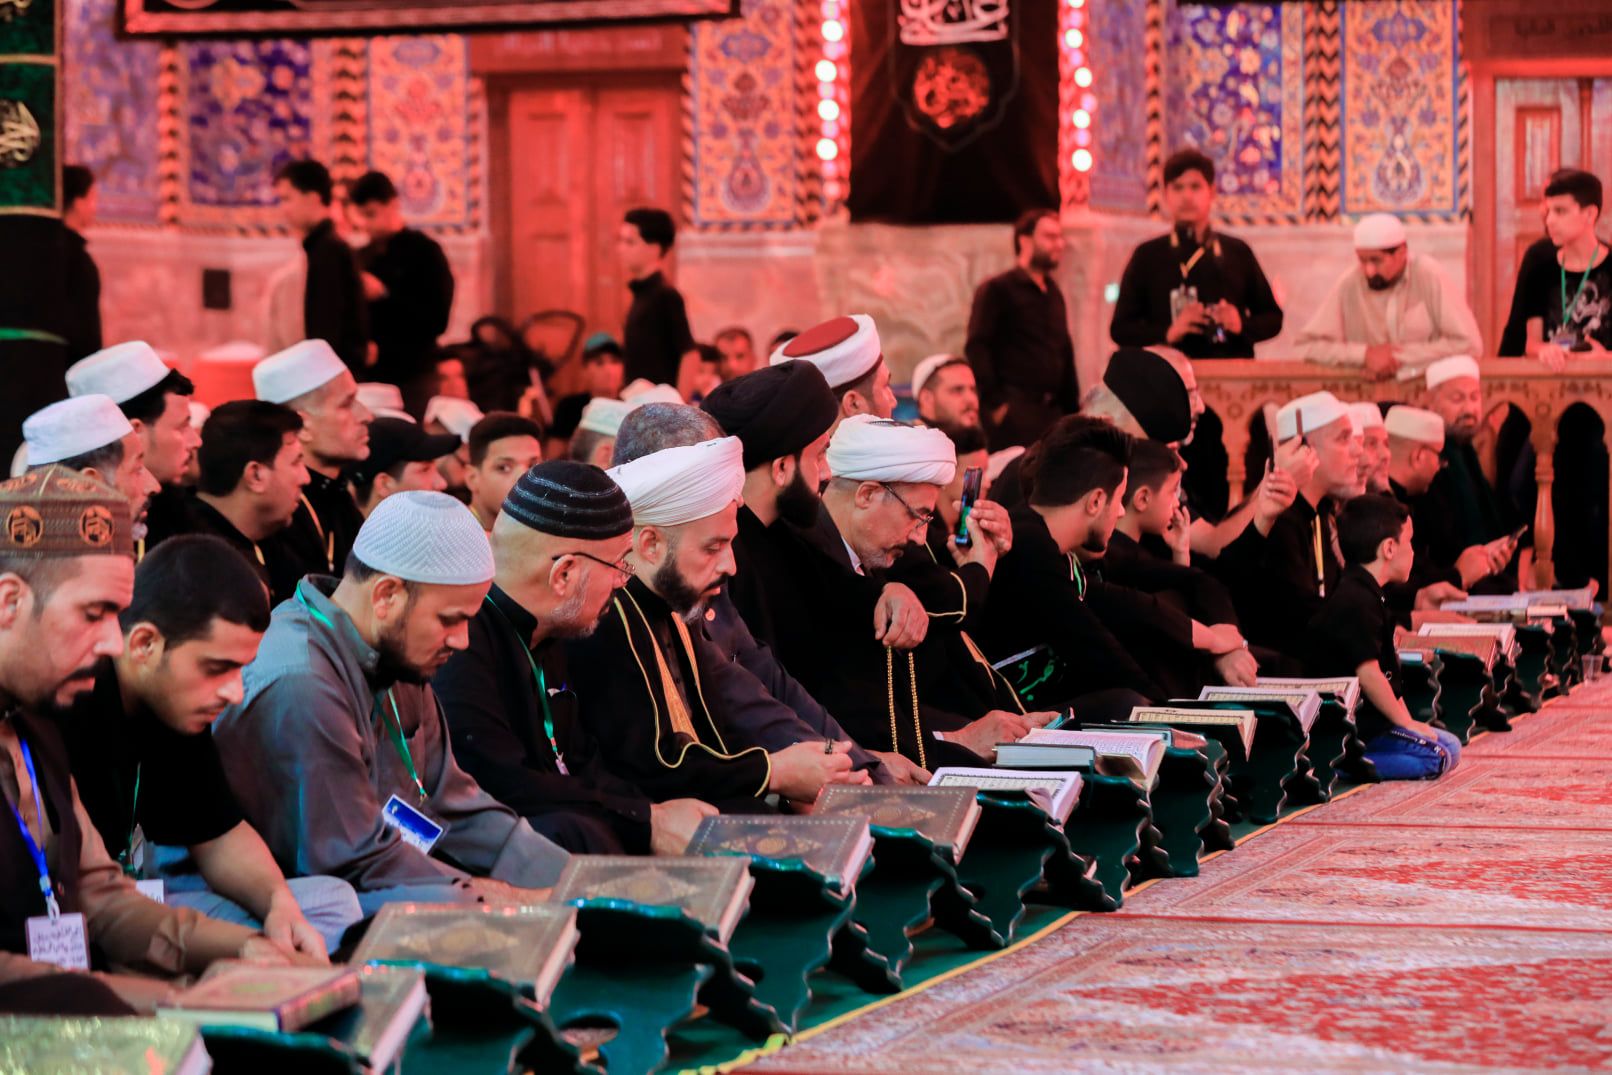 معهد القرآن الكريم يقيم أمسية قرآنية بمشاركة اتحاد الروابط والتجمعات القرآنية في العراق